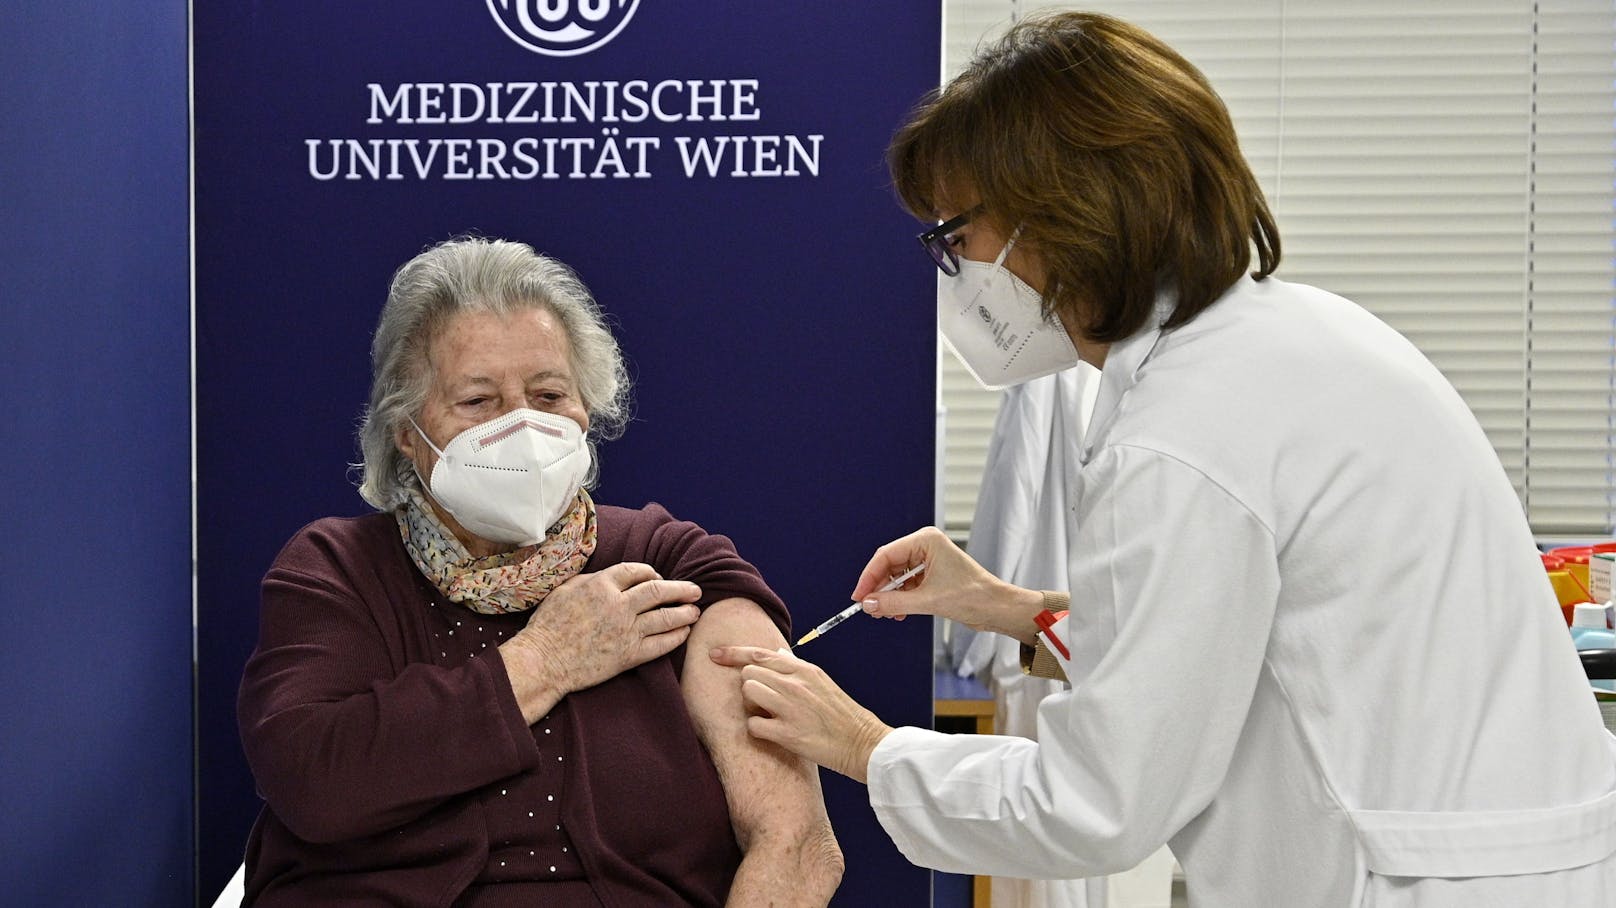 Frau Hofer wurde als erste Österreicherin geimpft.